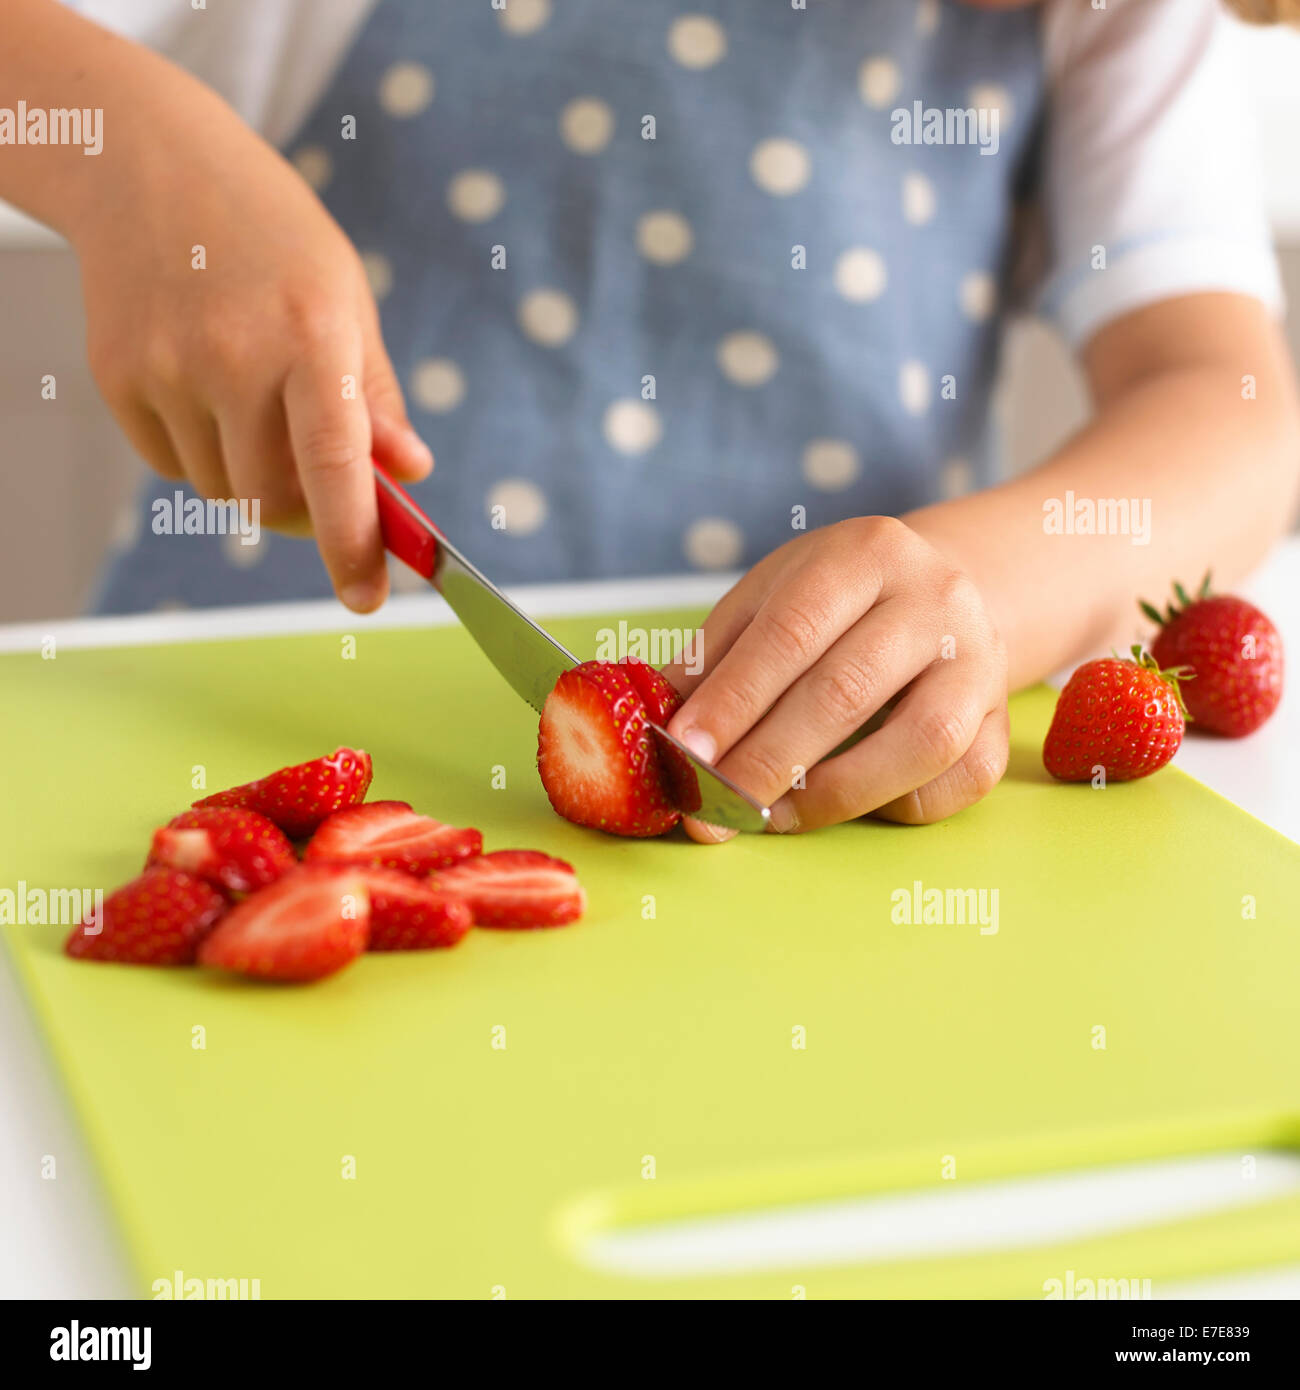 child slicing strawberries Stock Photo